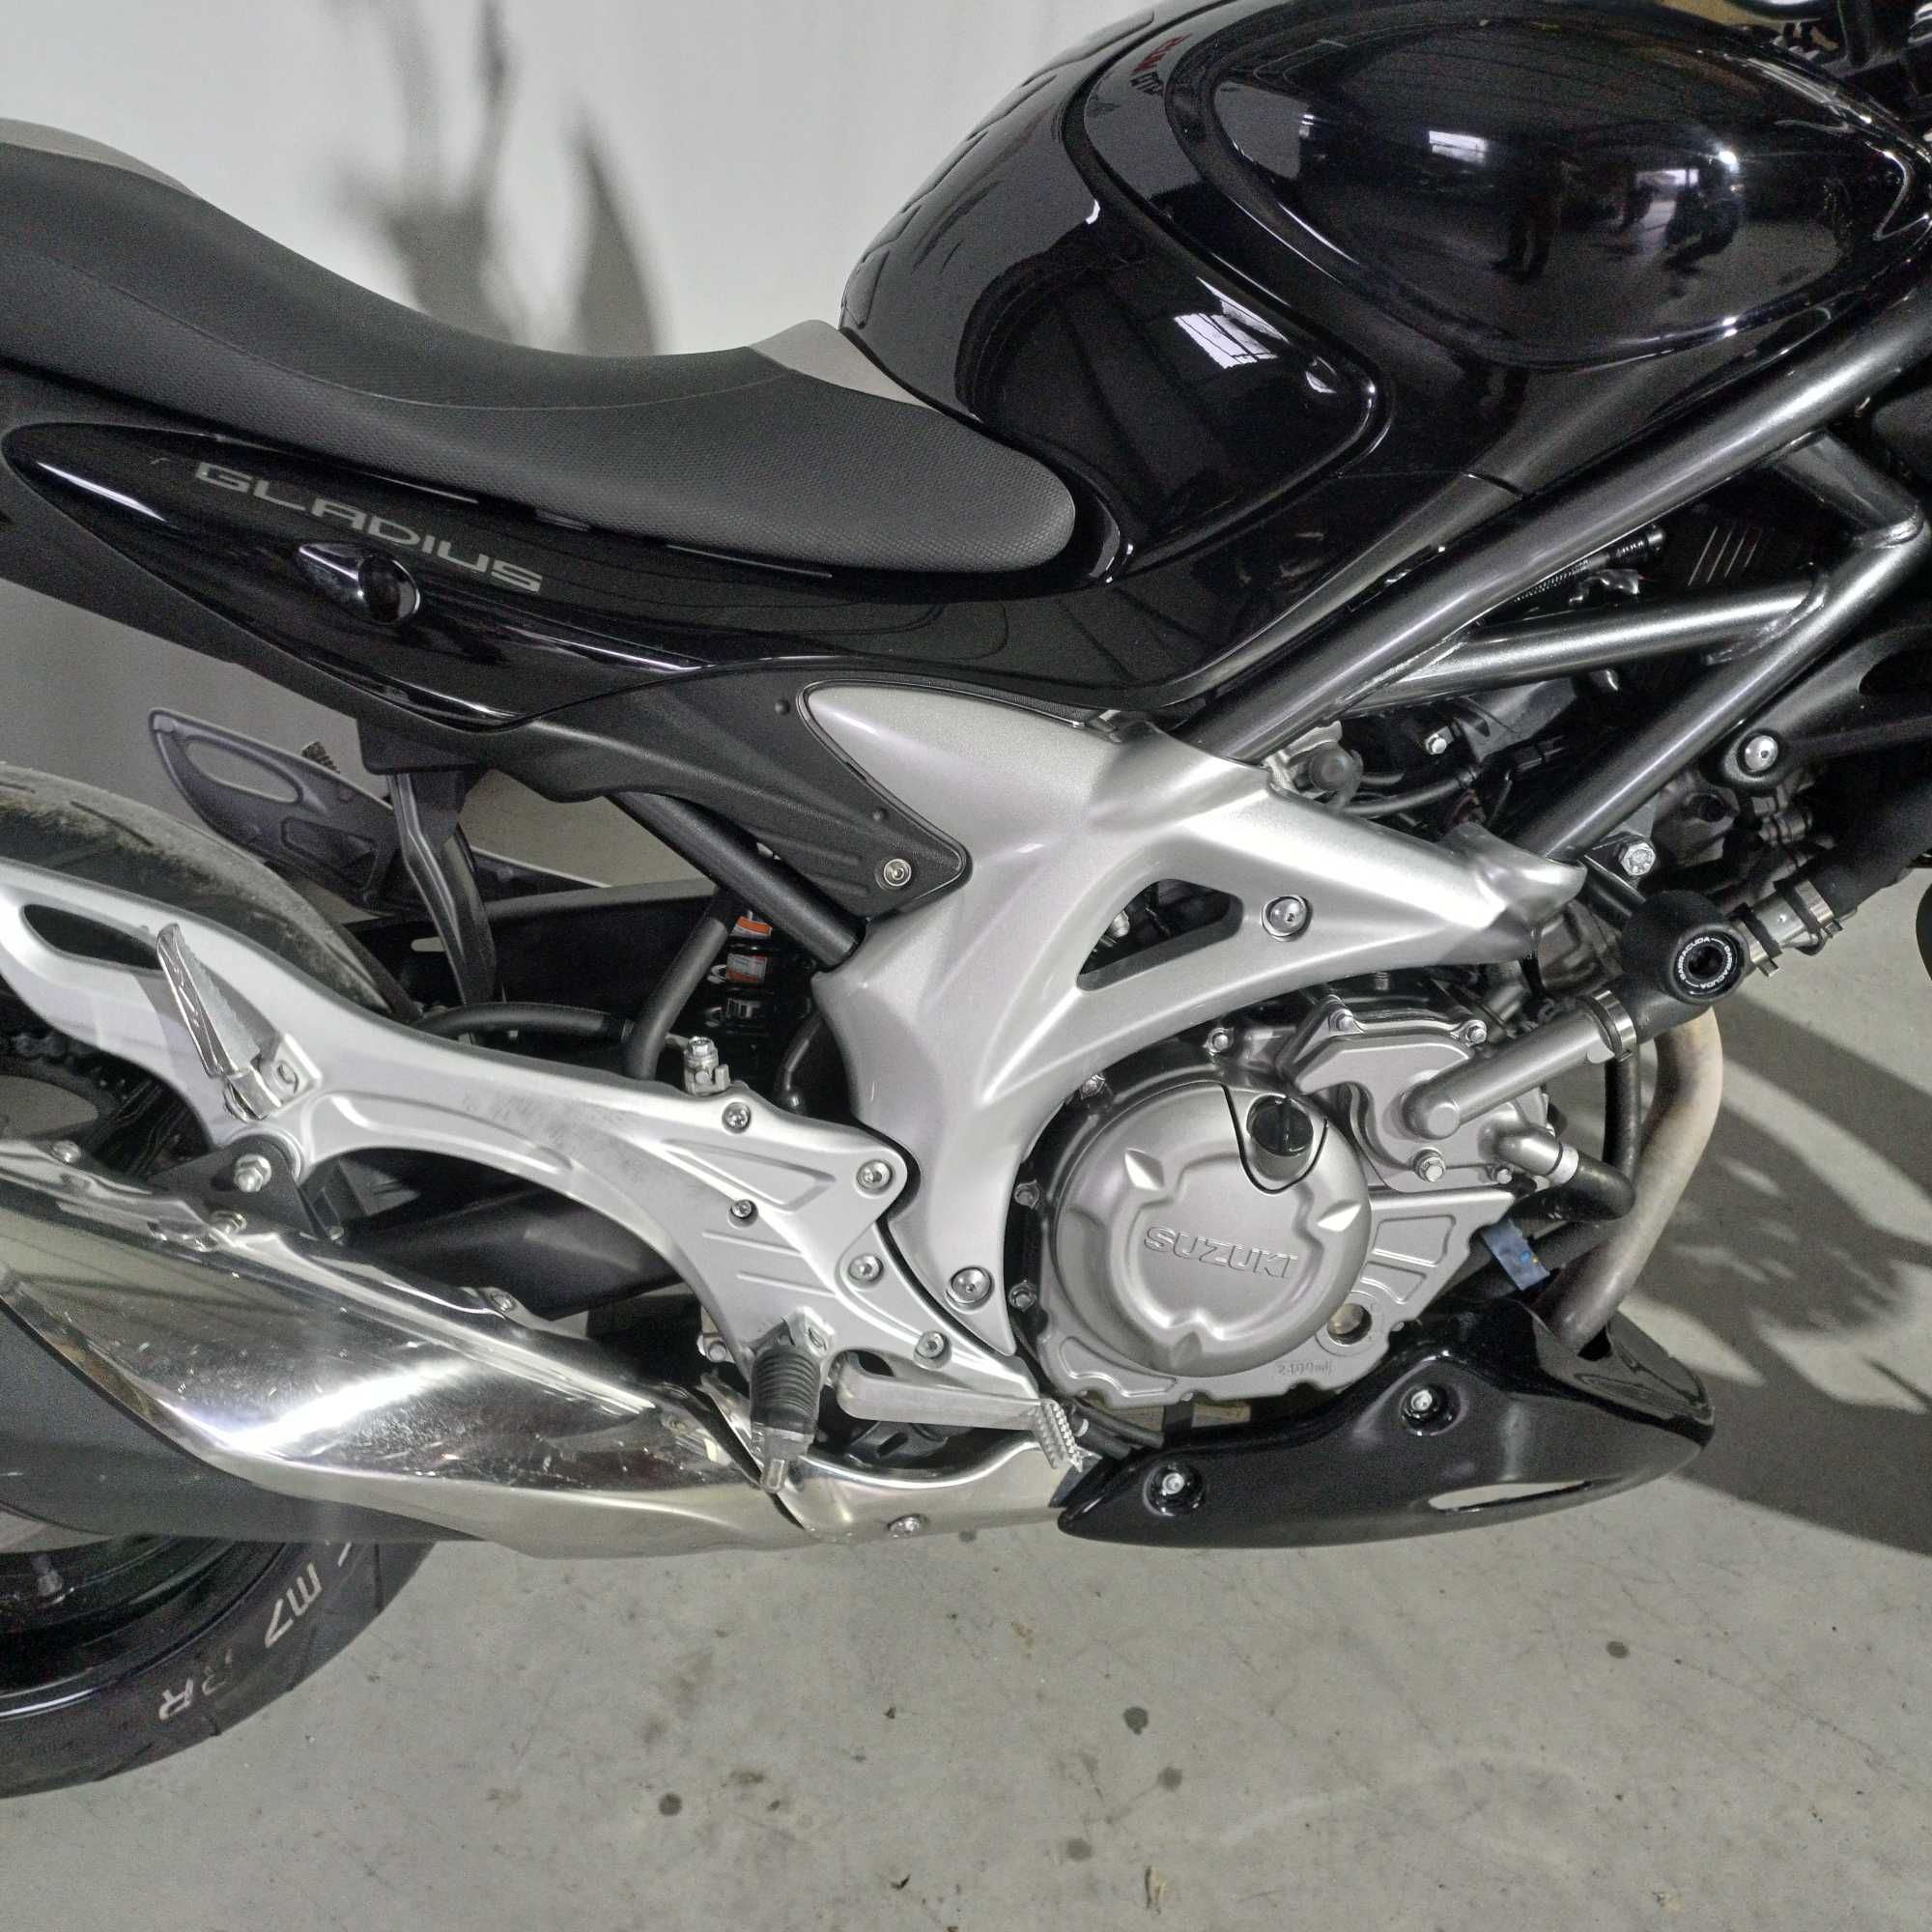 Motocicleta Suzuki Gladius 650 | S105660 | motomus.ro